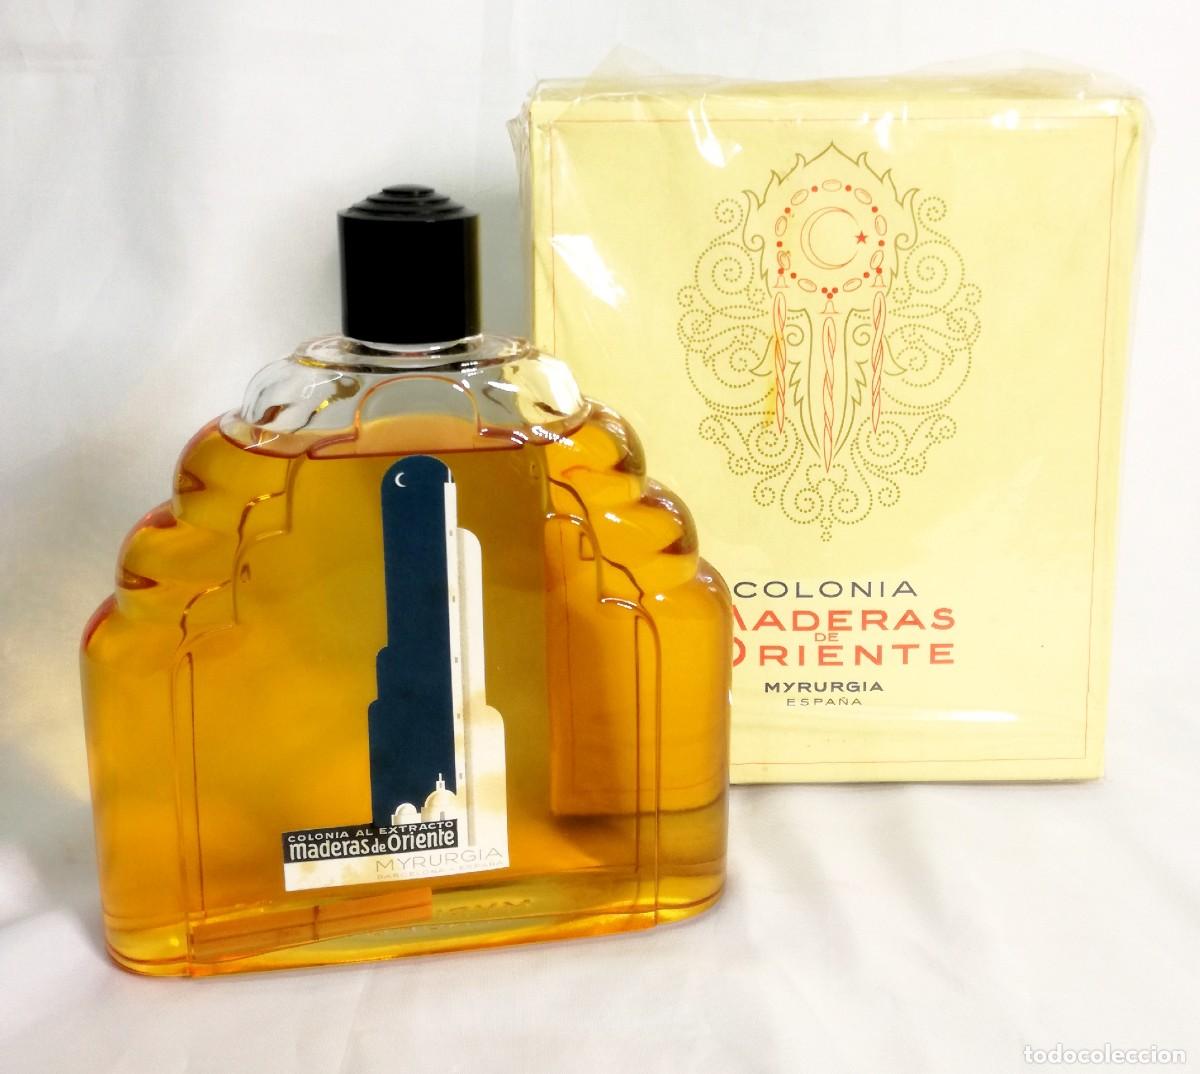 colonia al extracto maderas de oriente 805ml. n - Buy Antique perfume  miniatures and bottles on todocoleccion